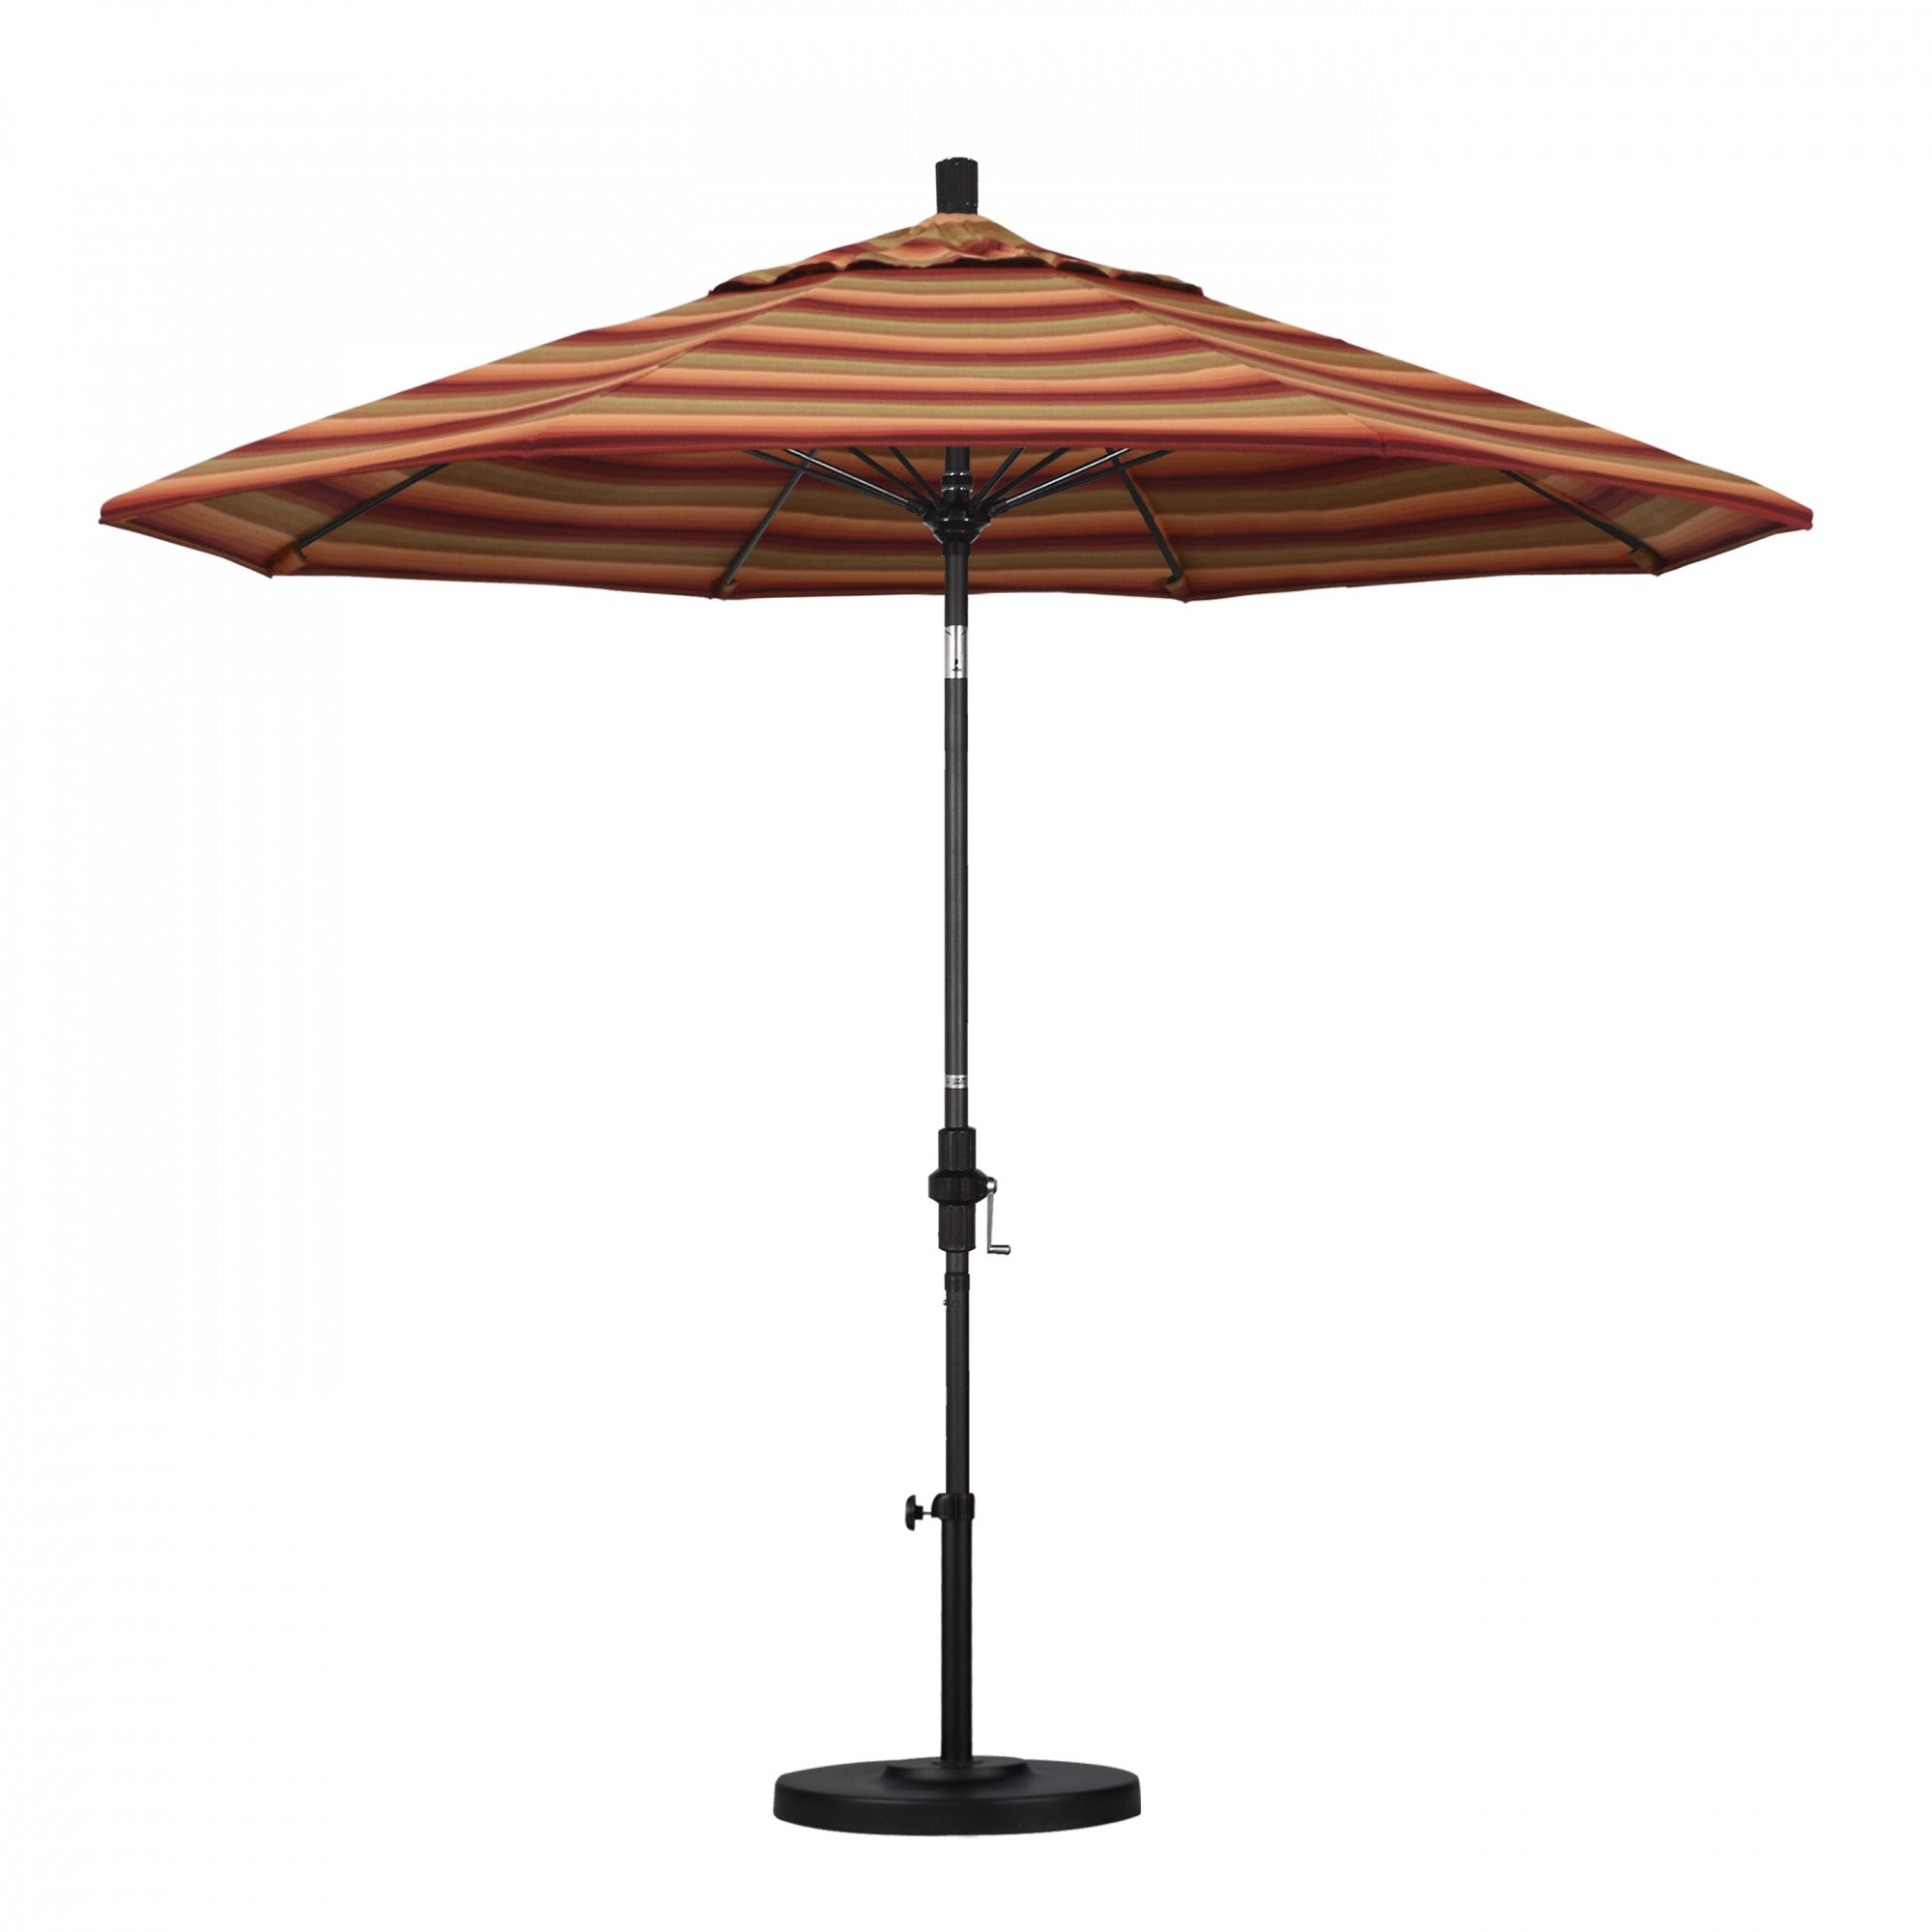 California Umbrella - 9' - Patio Umbrella Umbrella - Aluminum Pole - Astoria Sunset - Sunbrella  - GSCUF908705-56095